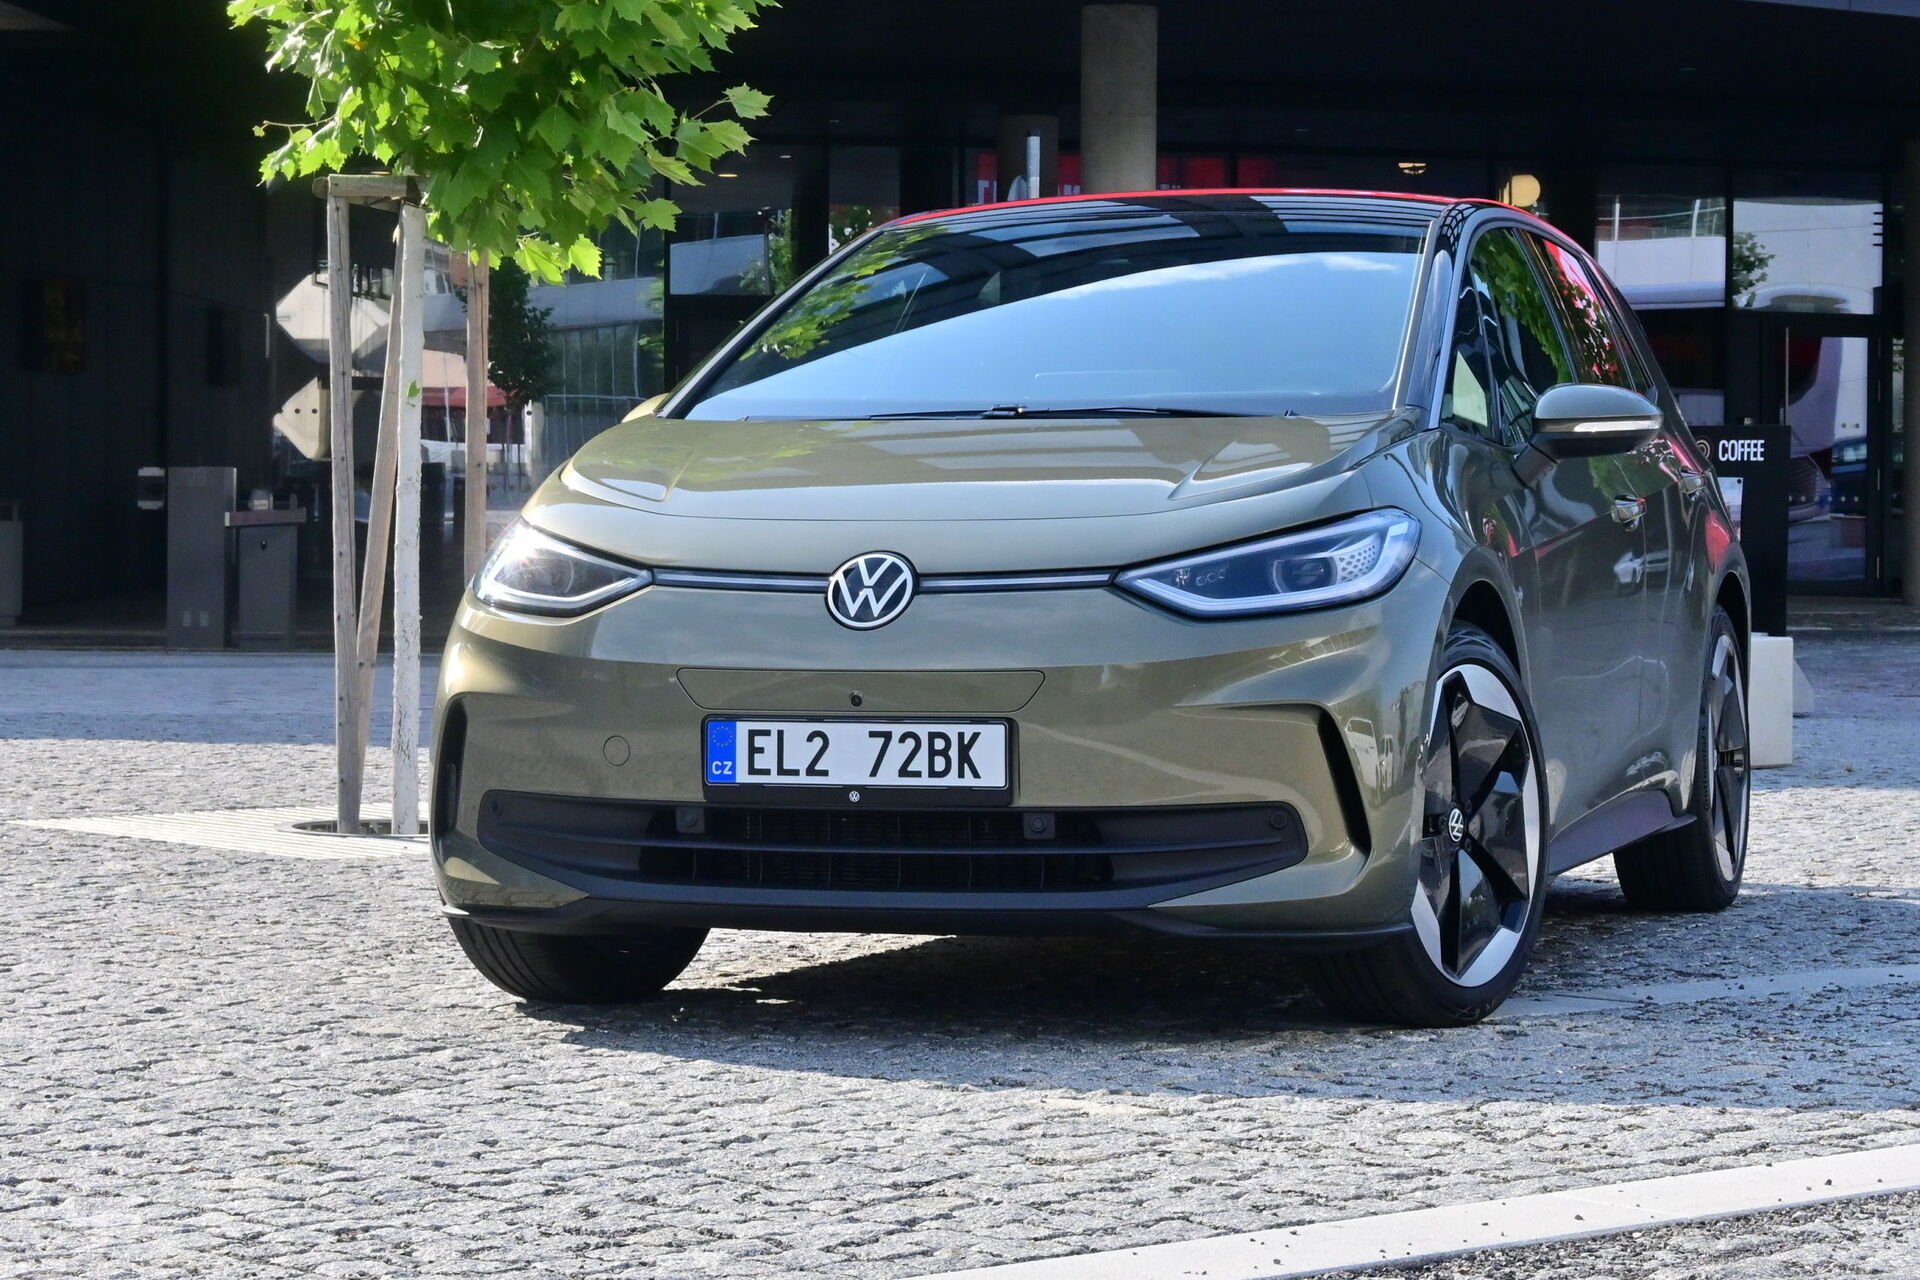 Volkswagen ID.3 facelift (2023)